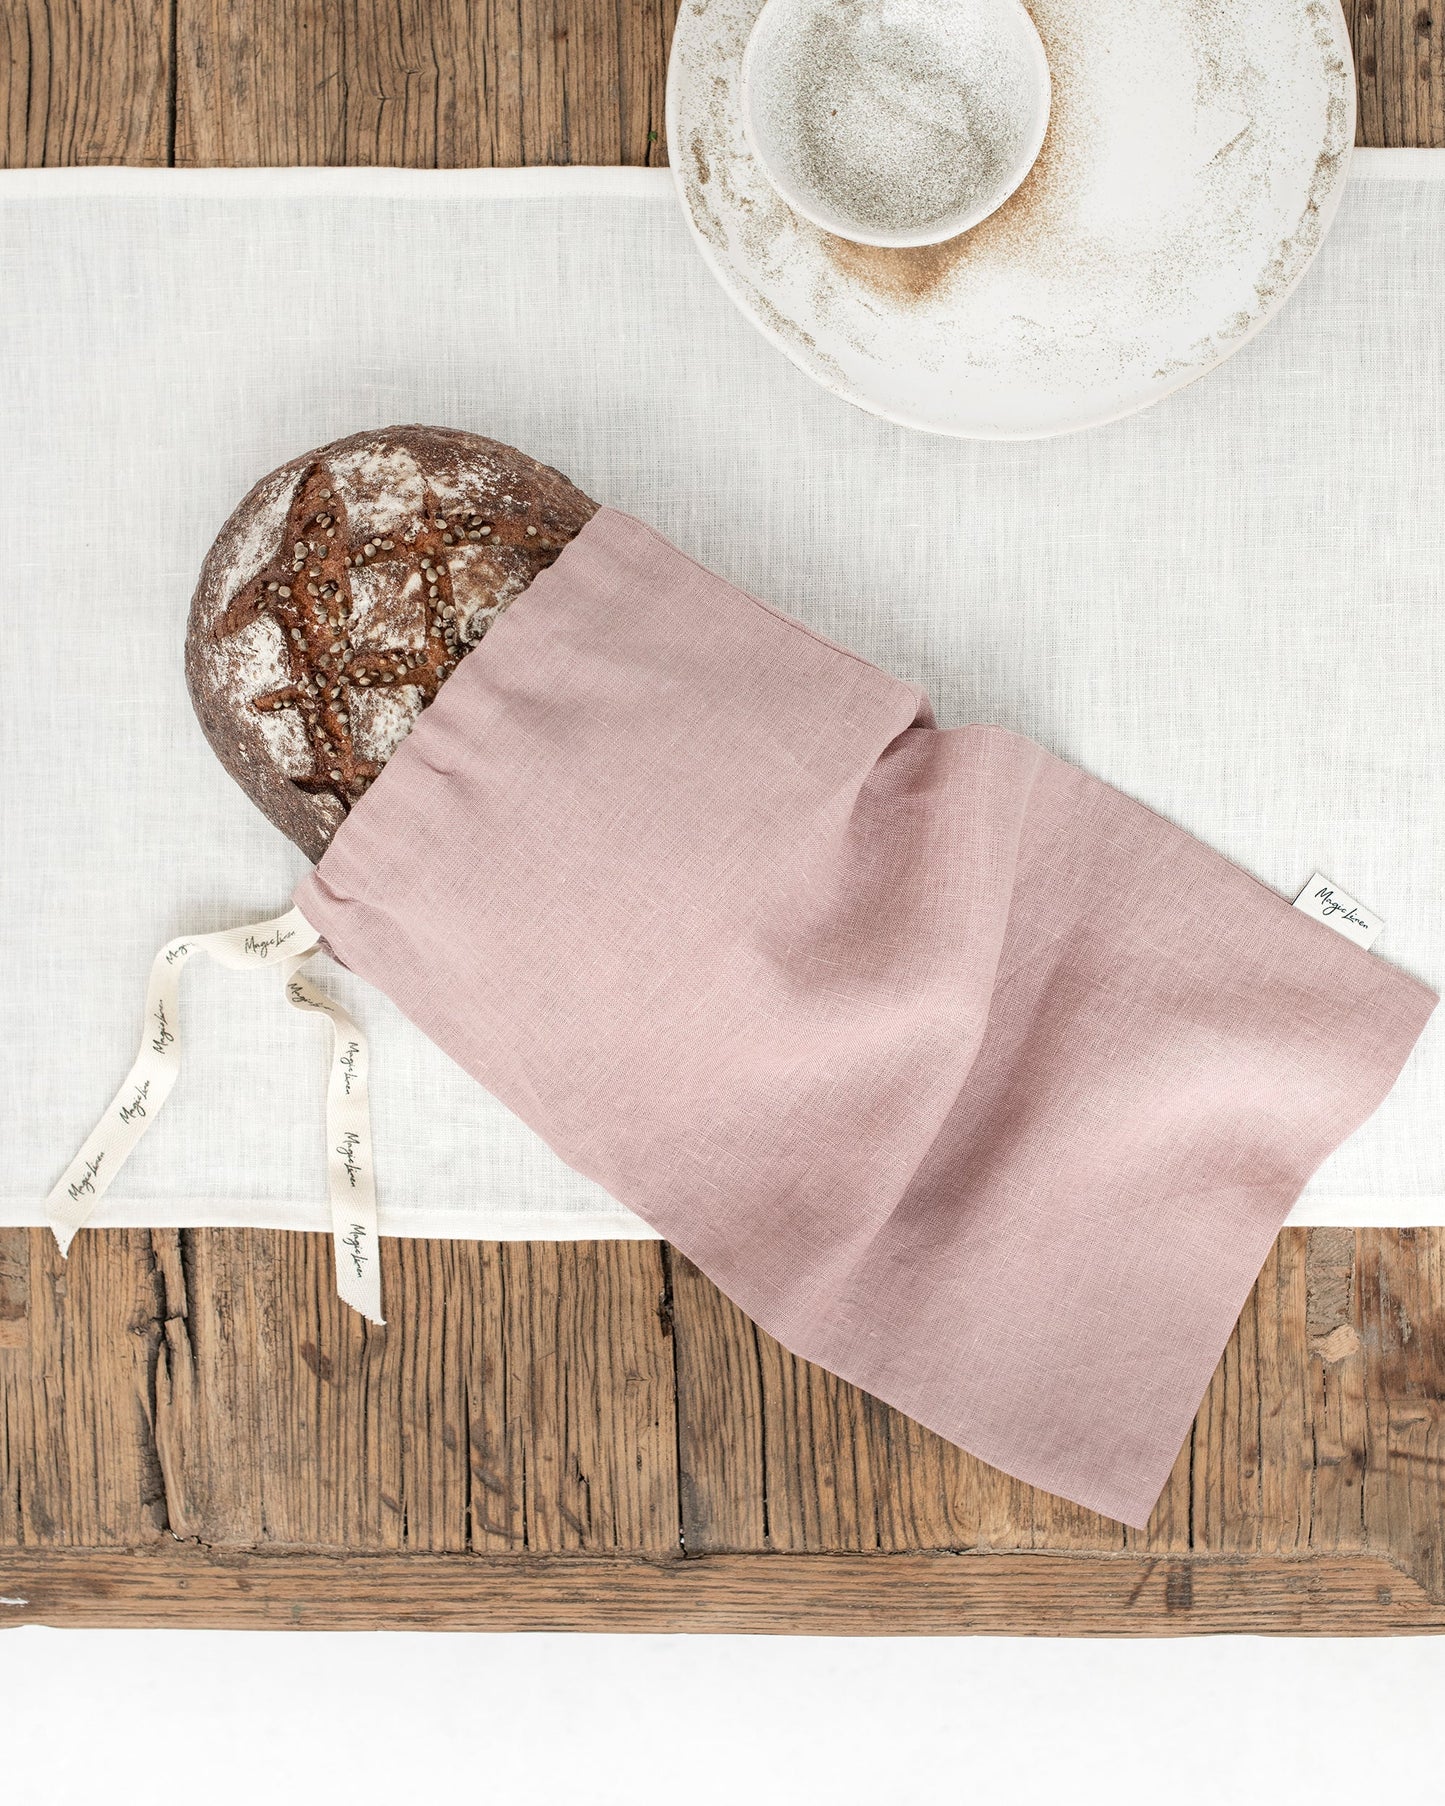 Linen bread bag in Woodrose - MagicLinen